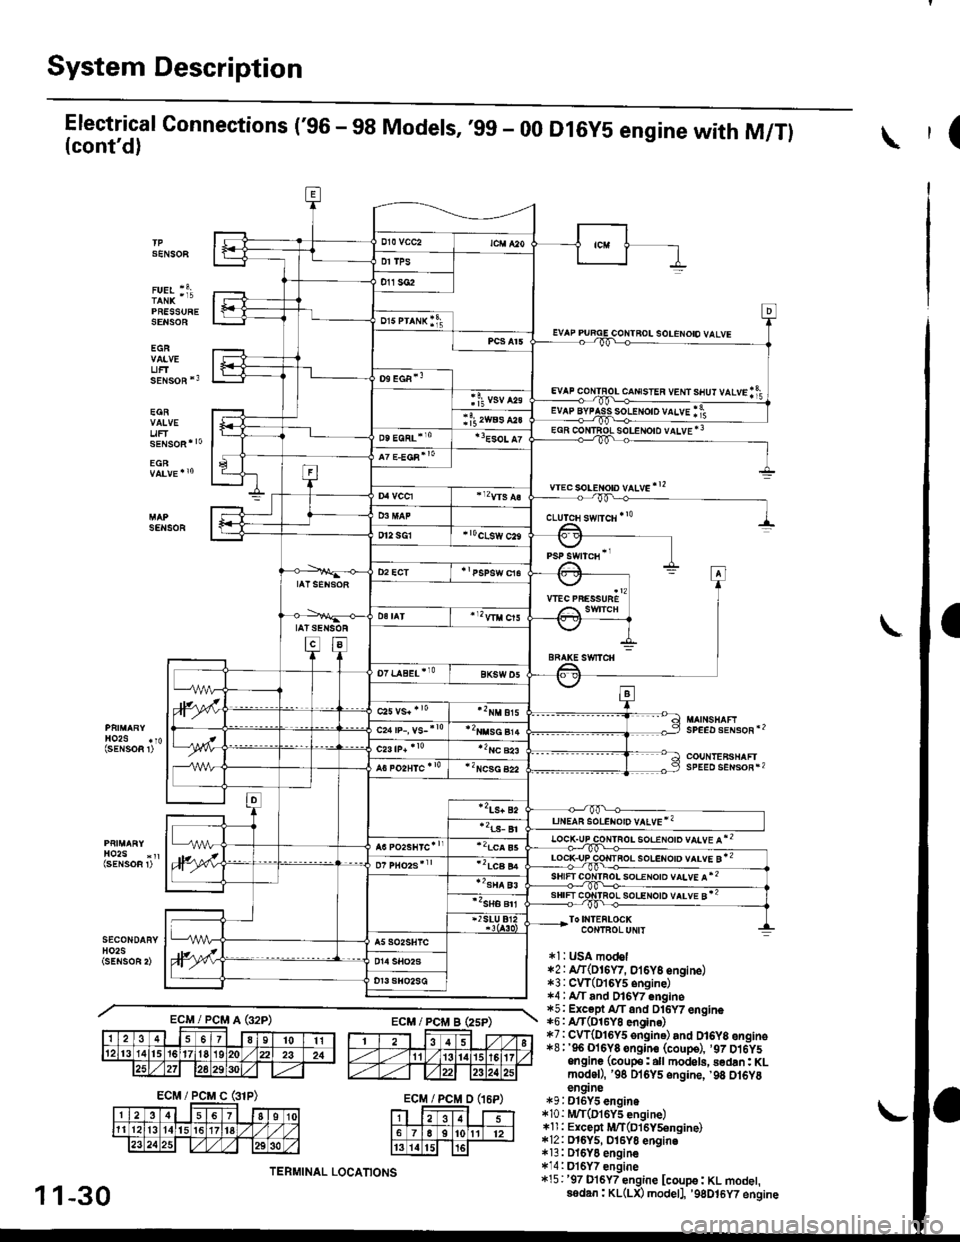 HONDA CIVIC 1996 6.G Workshop Manual System Description
Electrical Connections (96 - 98 Models, ,99 - 00(contd)
PRESSURESENSOE
EGR
UFTsENsoR *3
EGR
uF
D16Y5 engine with M/Tl(
SENSOF
solENoto vALvE *3
wec soLeton vltve!2
SENSOR
SPEED s